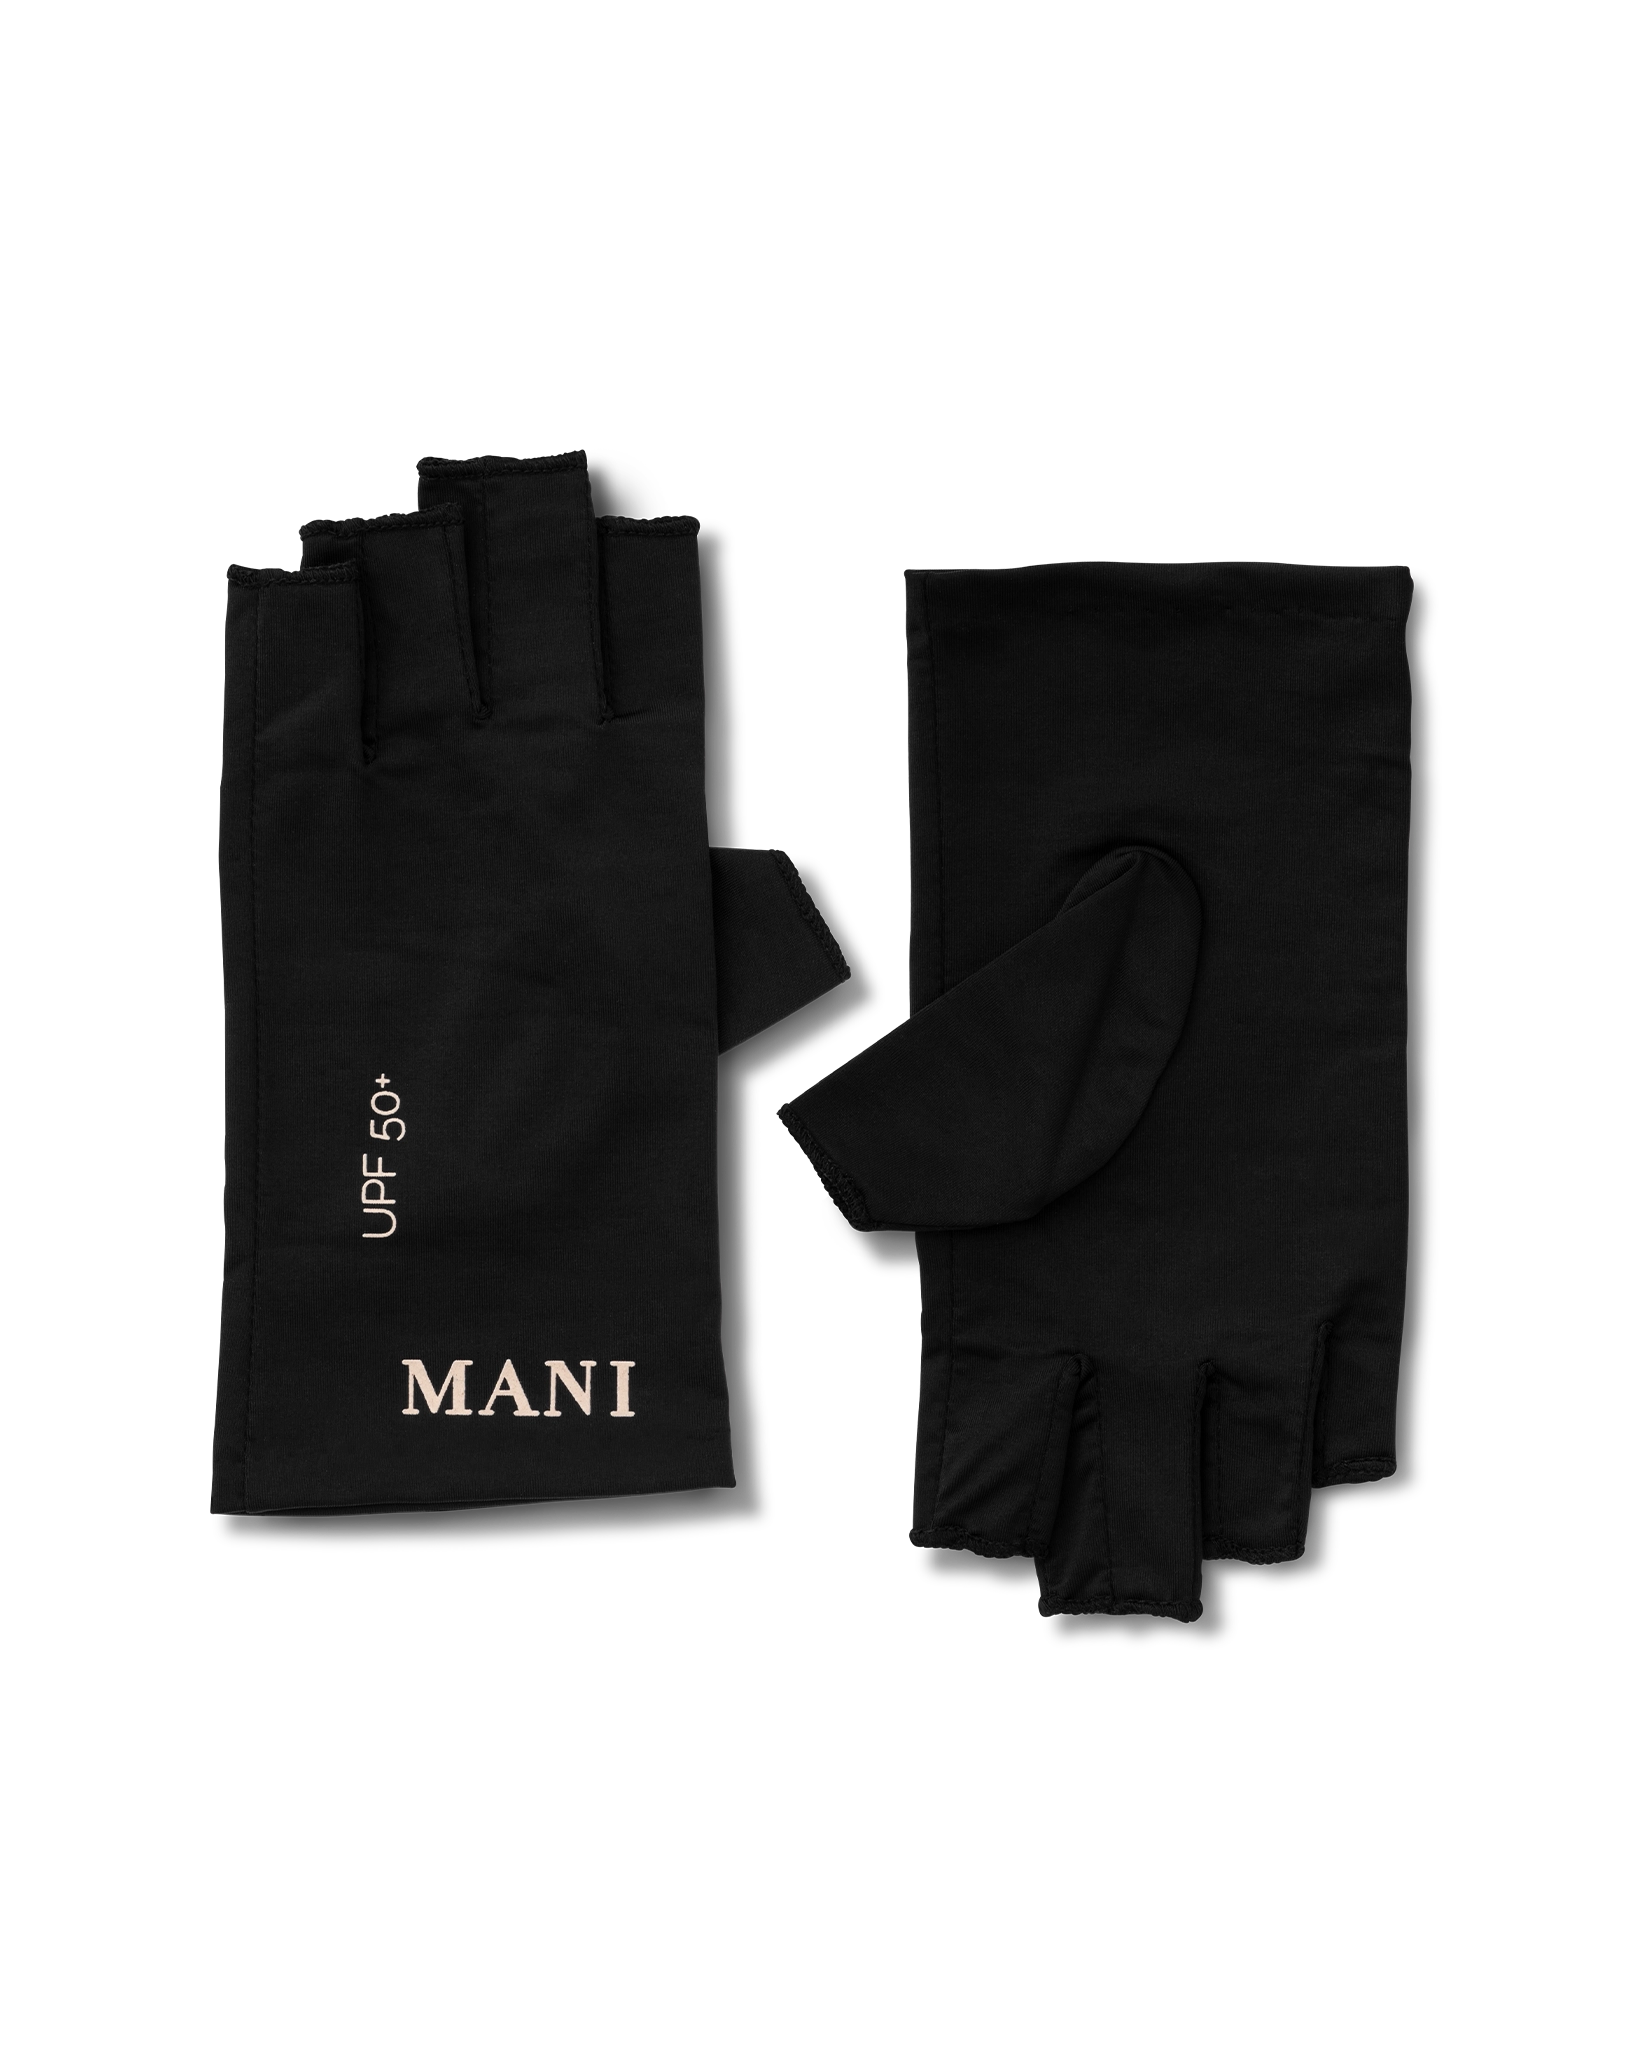 2 paires de gants UV pour les ongles Gants de manucure anti-UV pour salon  Gants